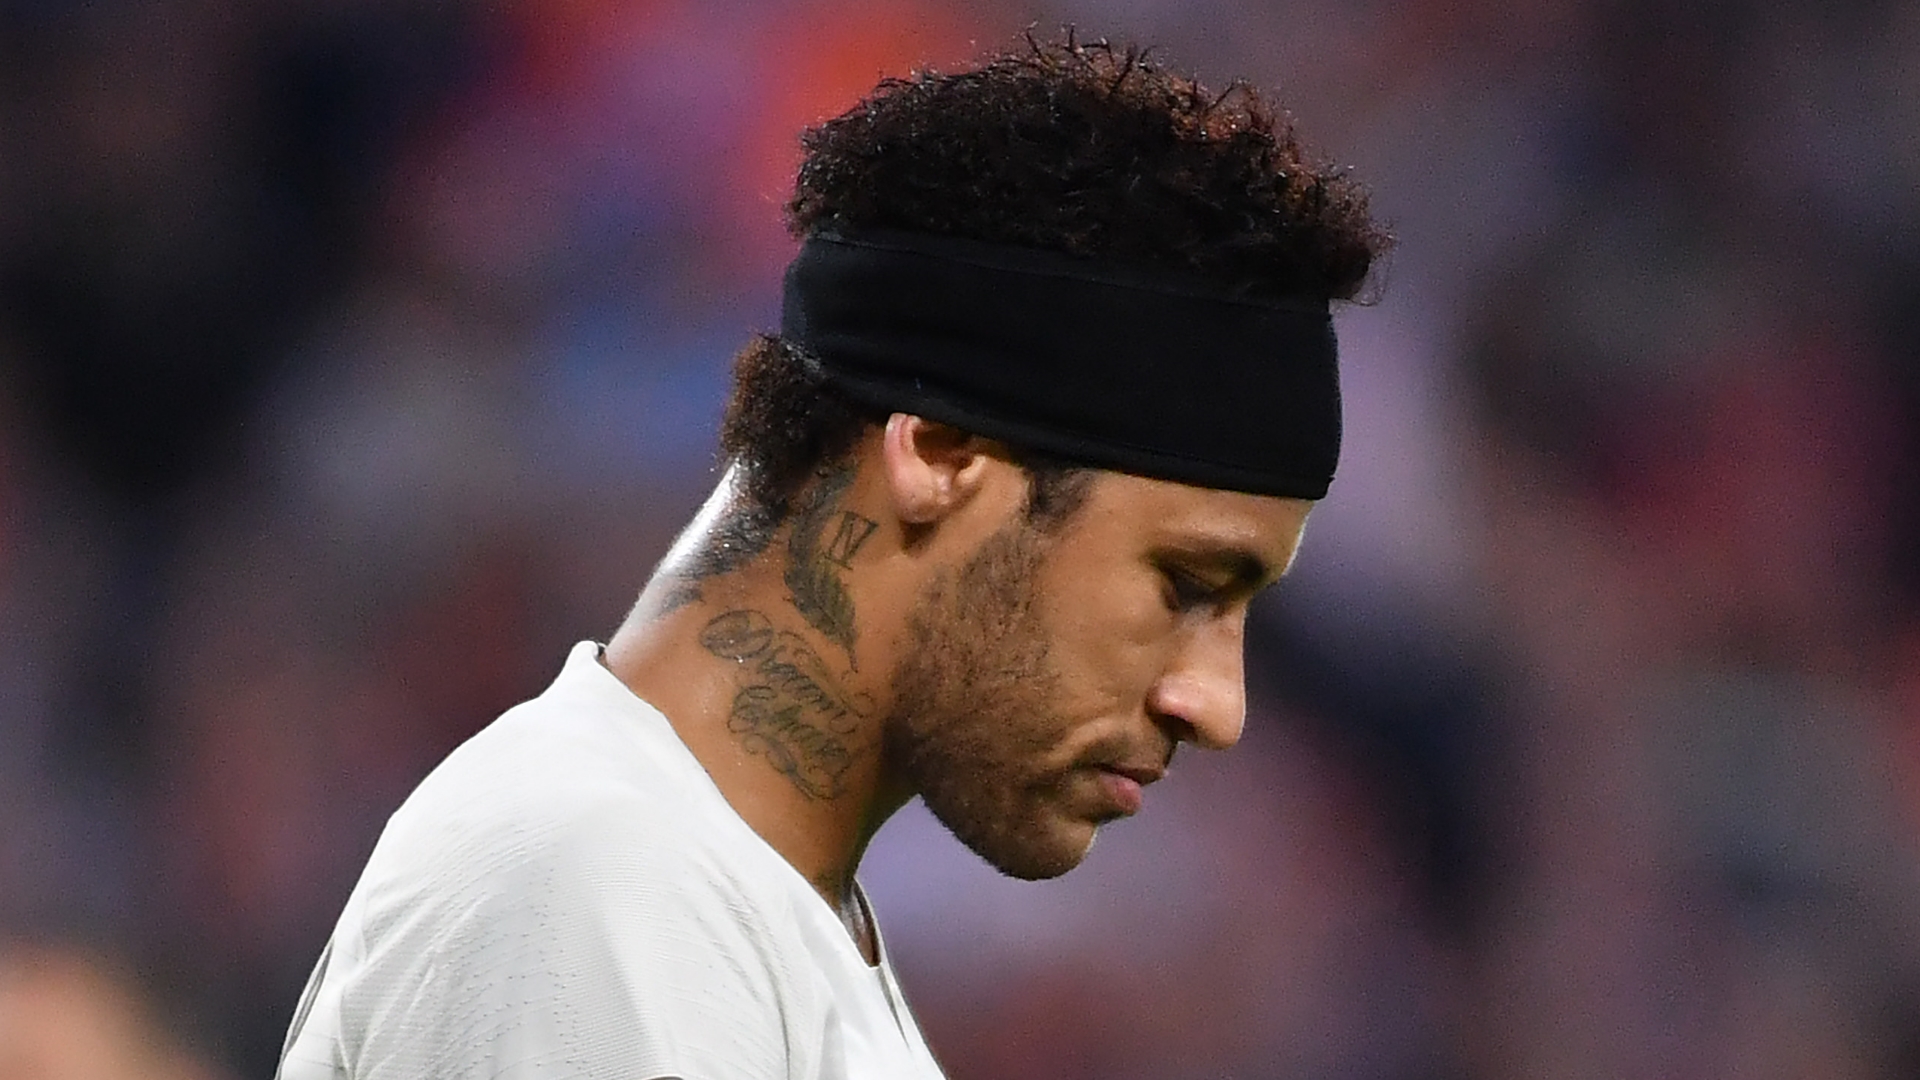 Neymar nuk ndreqet kurrë, tërbon drejtuesit e PSG-së me gjestin e tij